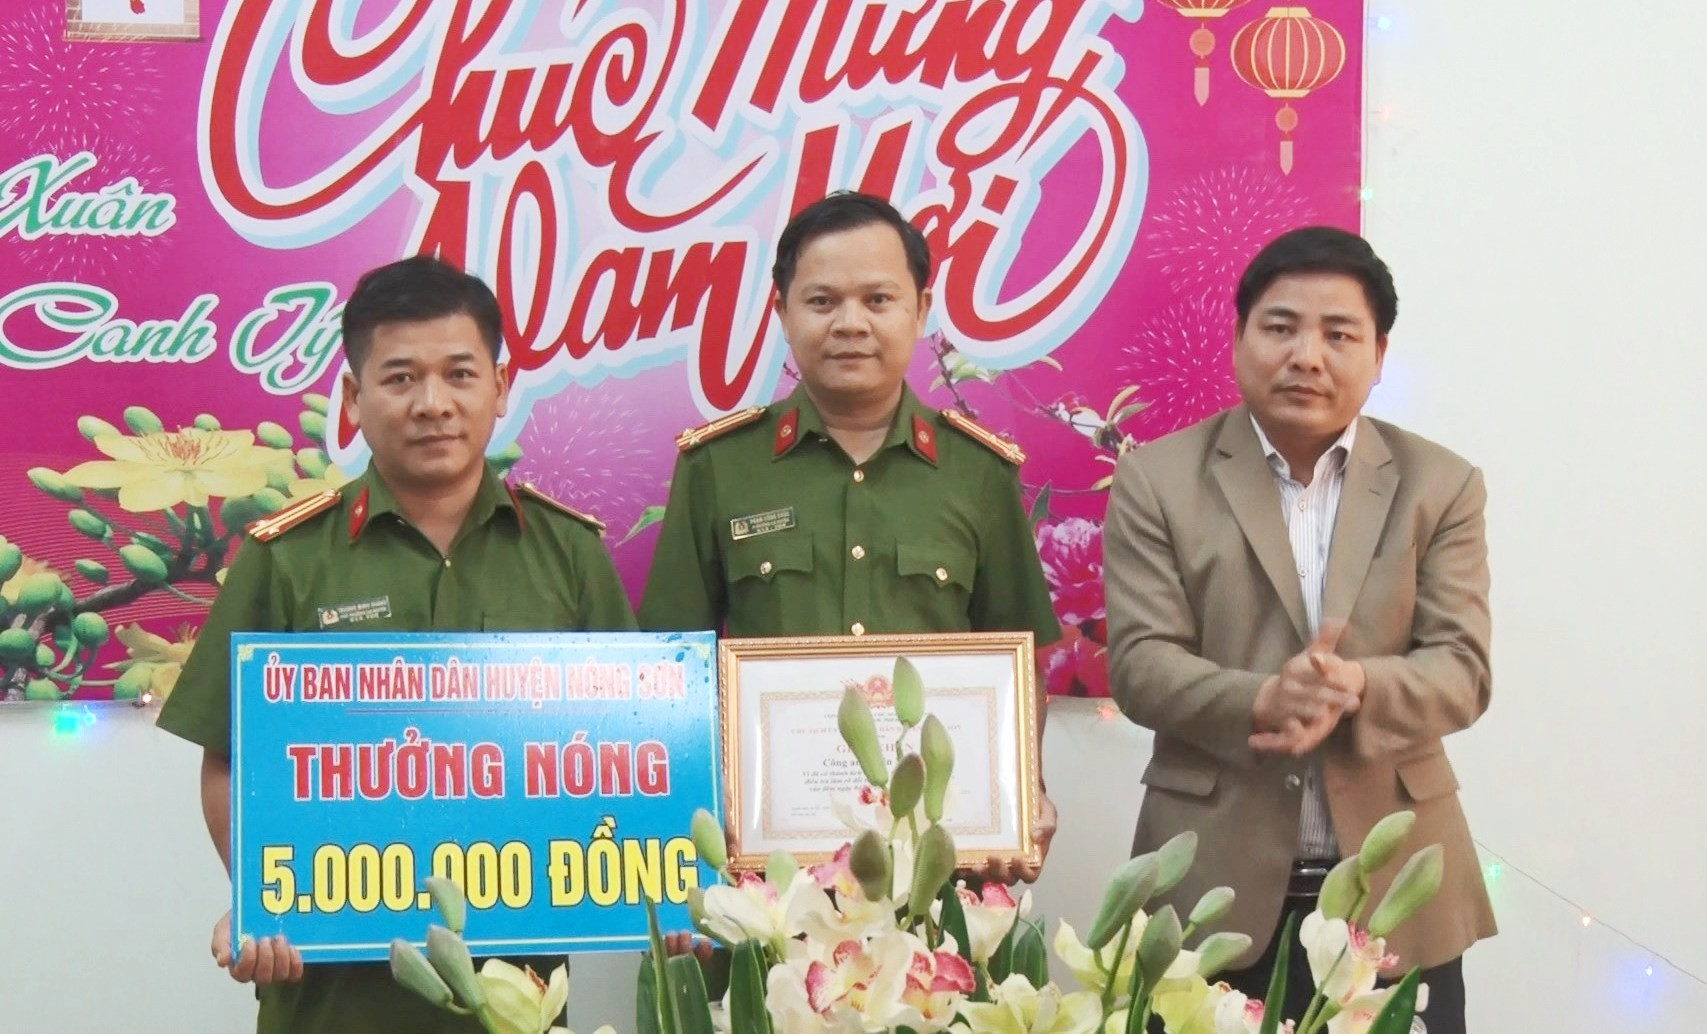 Chủ tịch UBND huyện Nông Sơn đến khen thưởng nóng tập thể Công an huyện